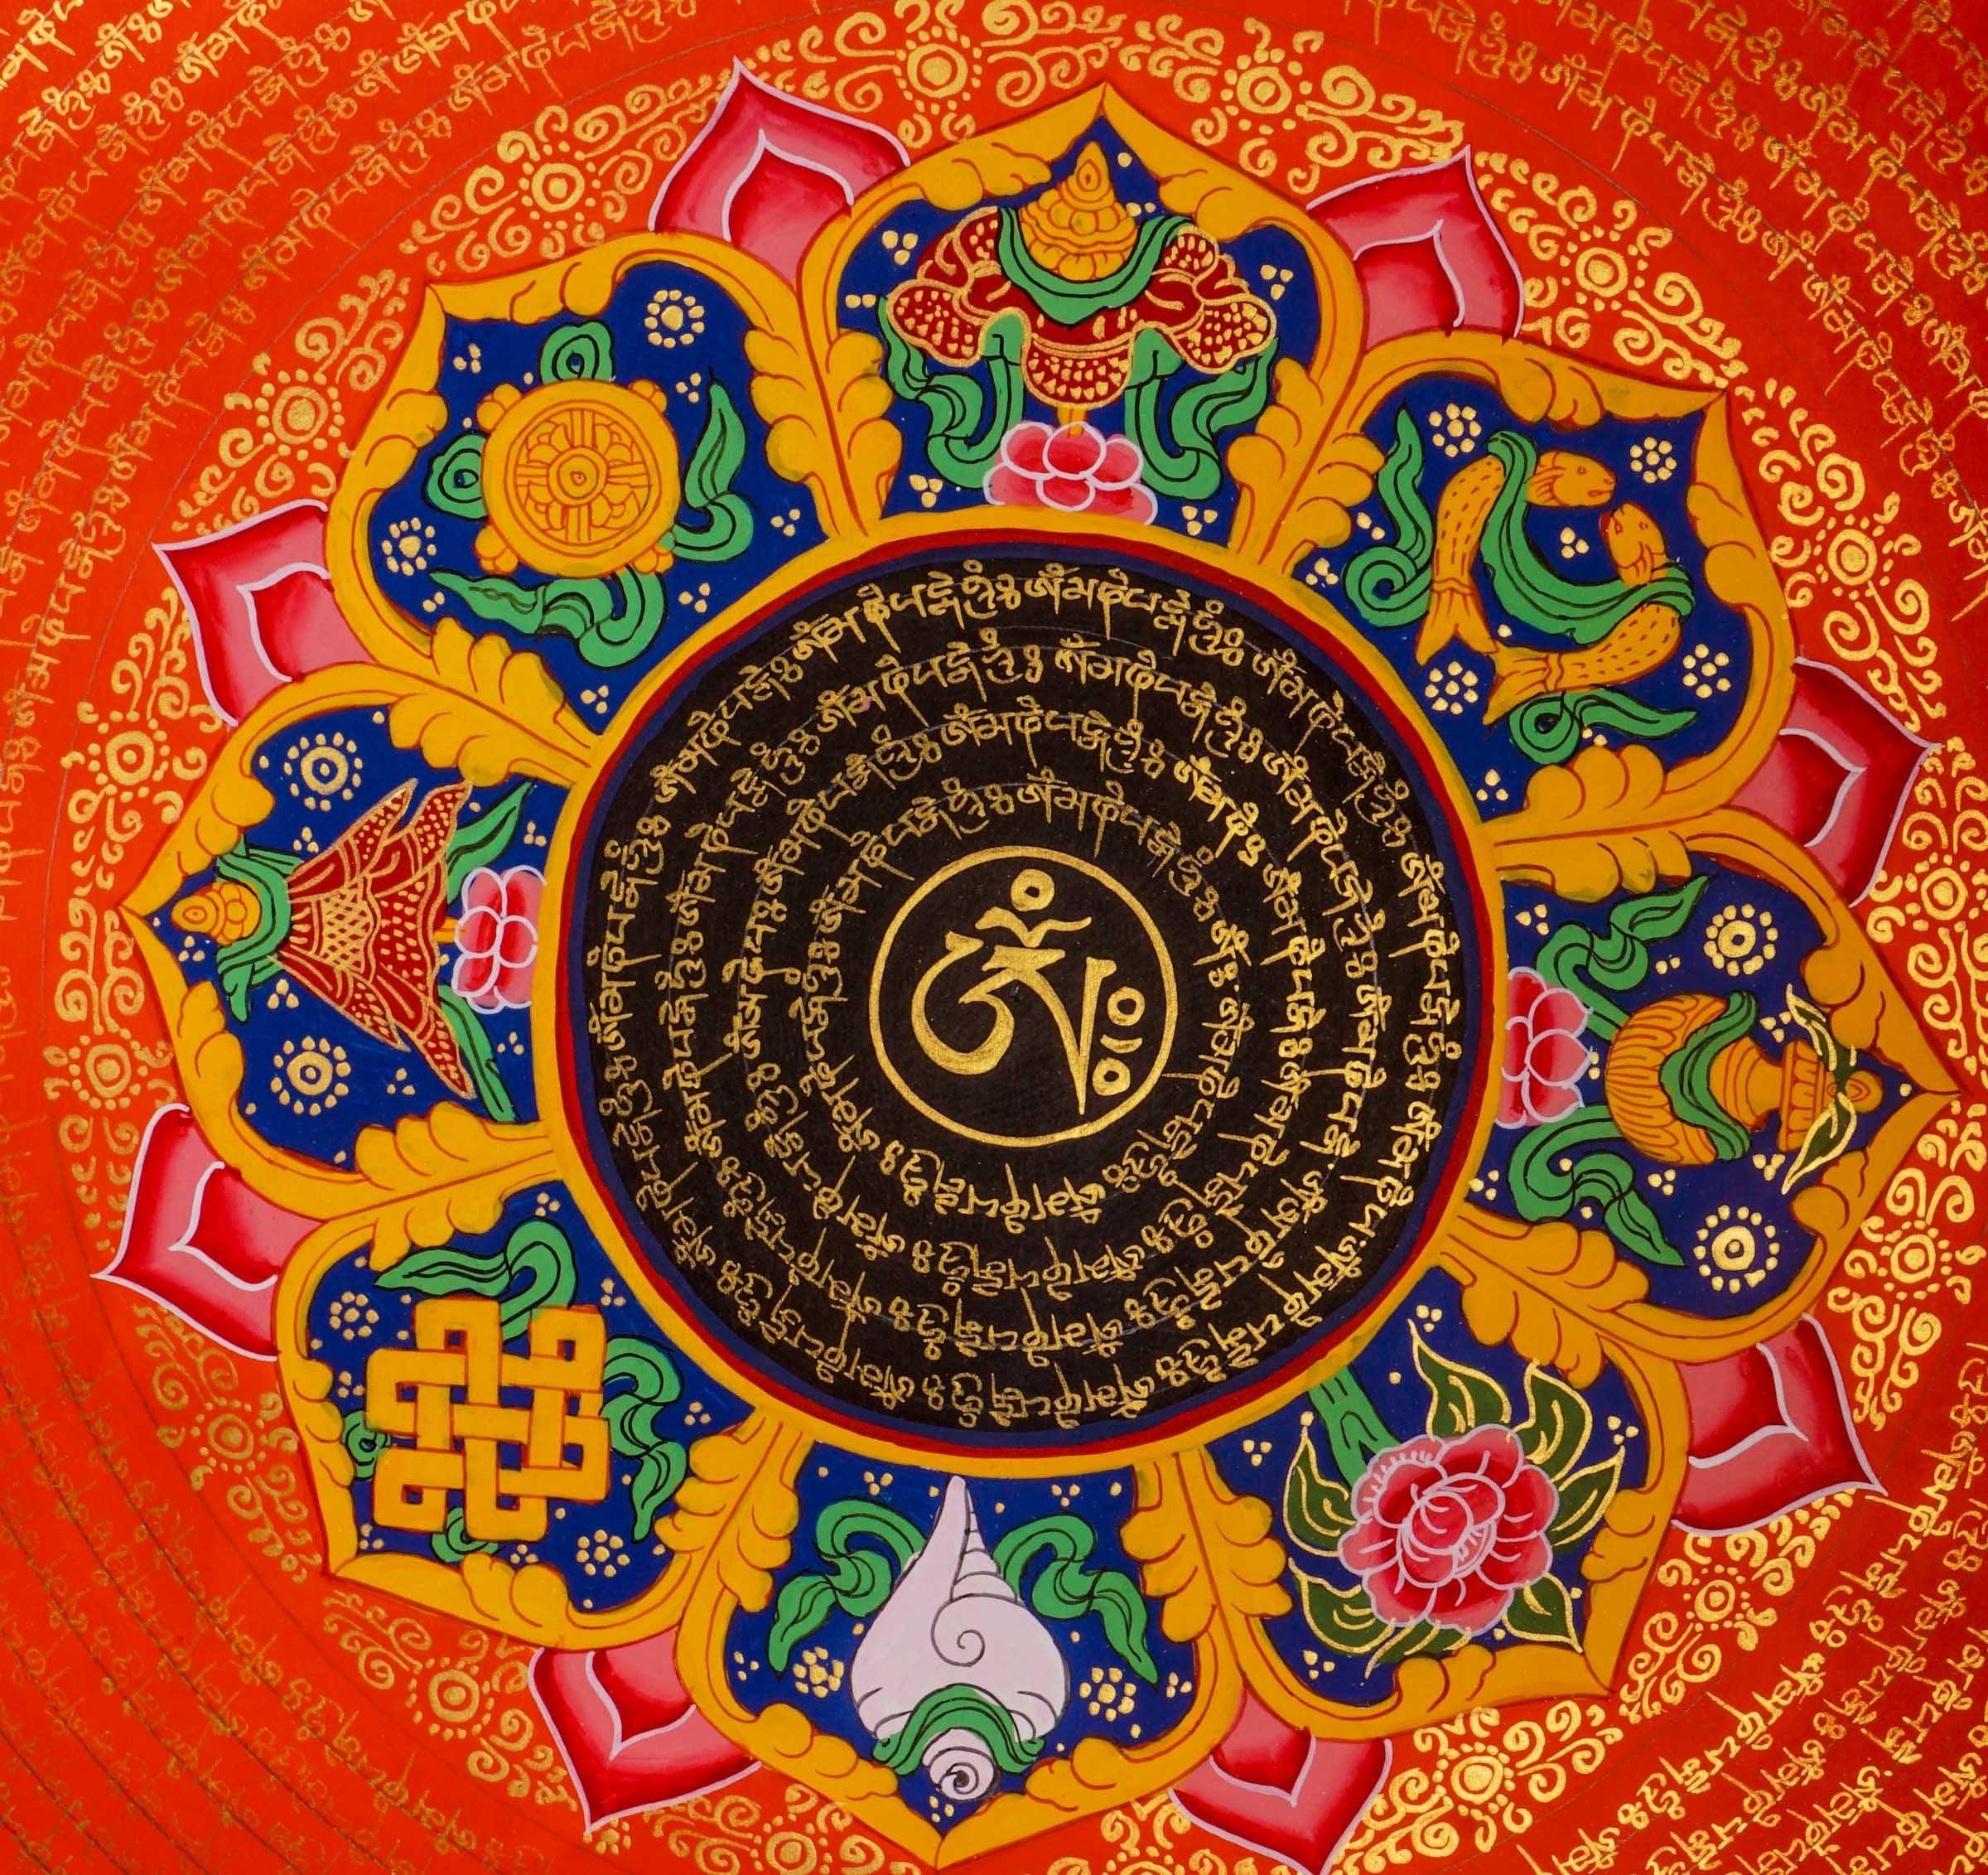 Om Mantra Mandala Thangka from Lamas of Himalayas 